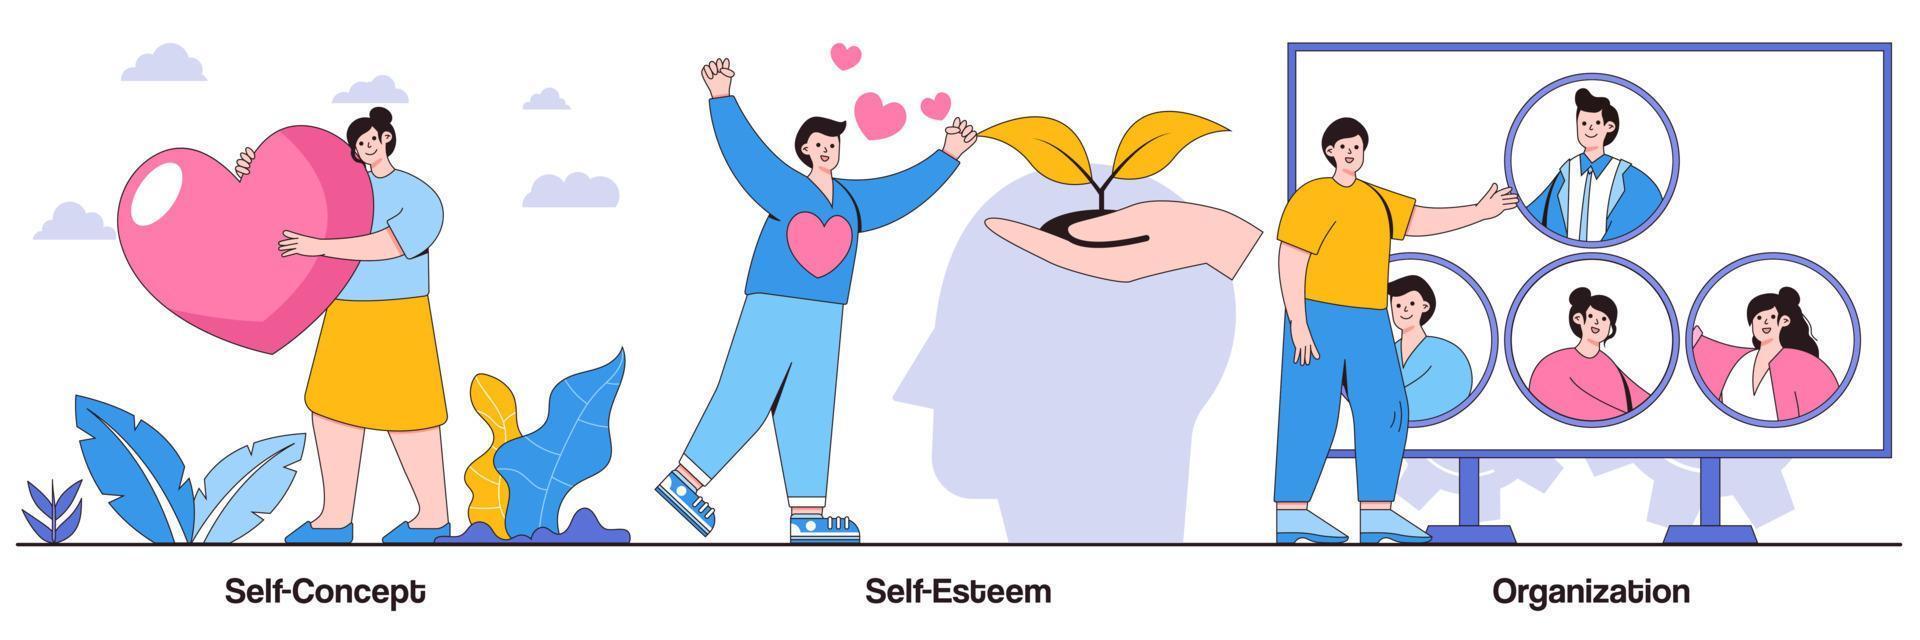 illustriertes Paket zu Selbstkonzept, Selbstwertgefühl und Organisation vektor